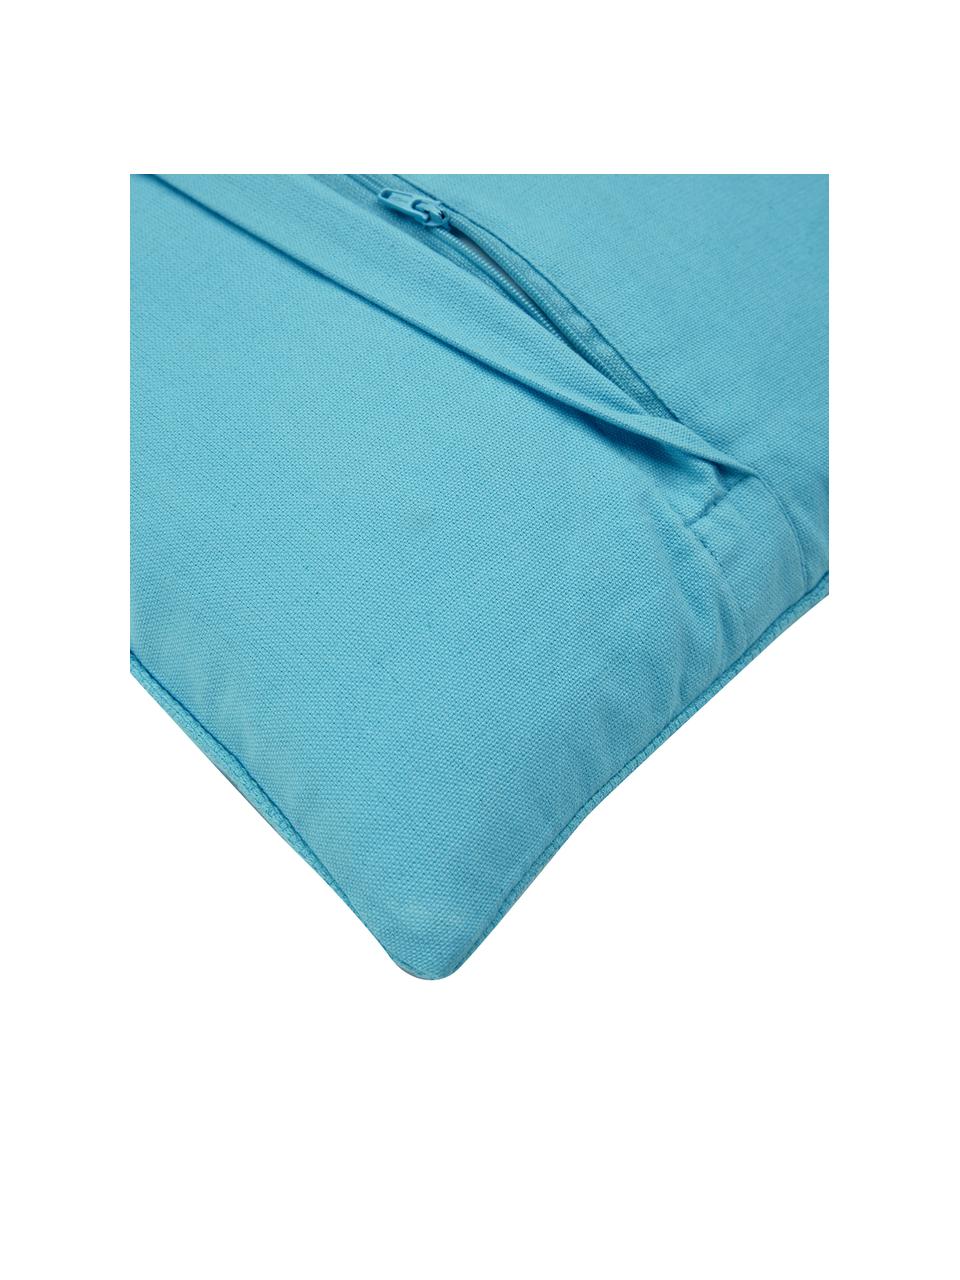 Housse de coussin 45x45 bleu Paloma, 100 % coton, Bleu, larg. 45 x long. 45 cm